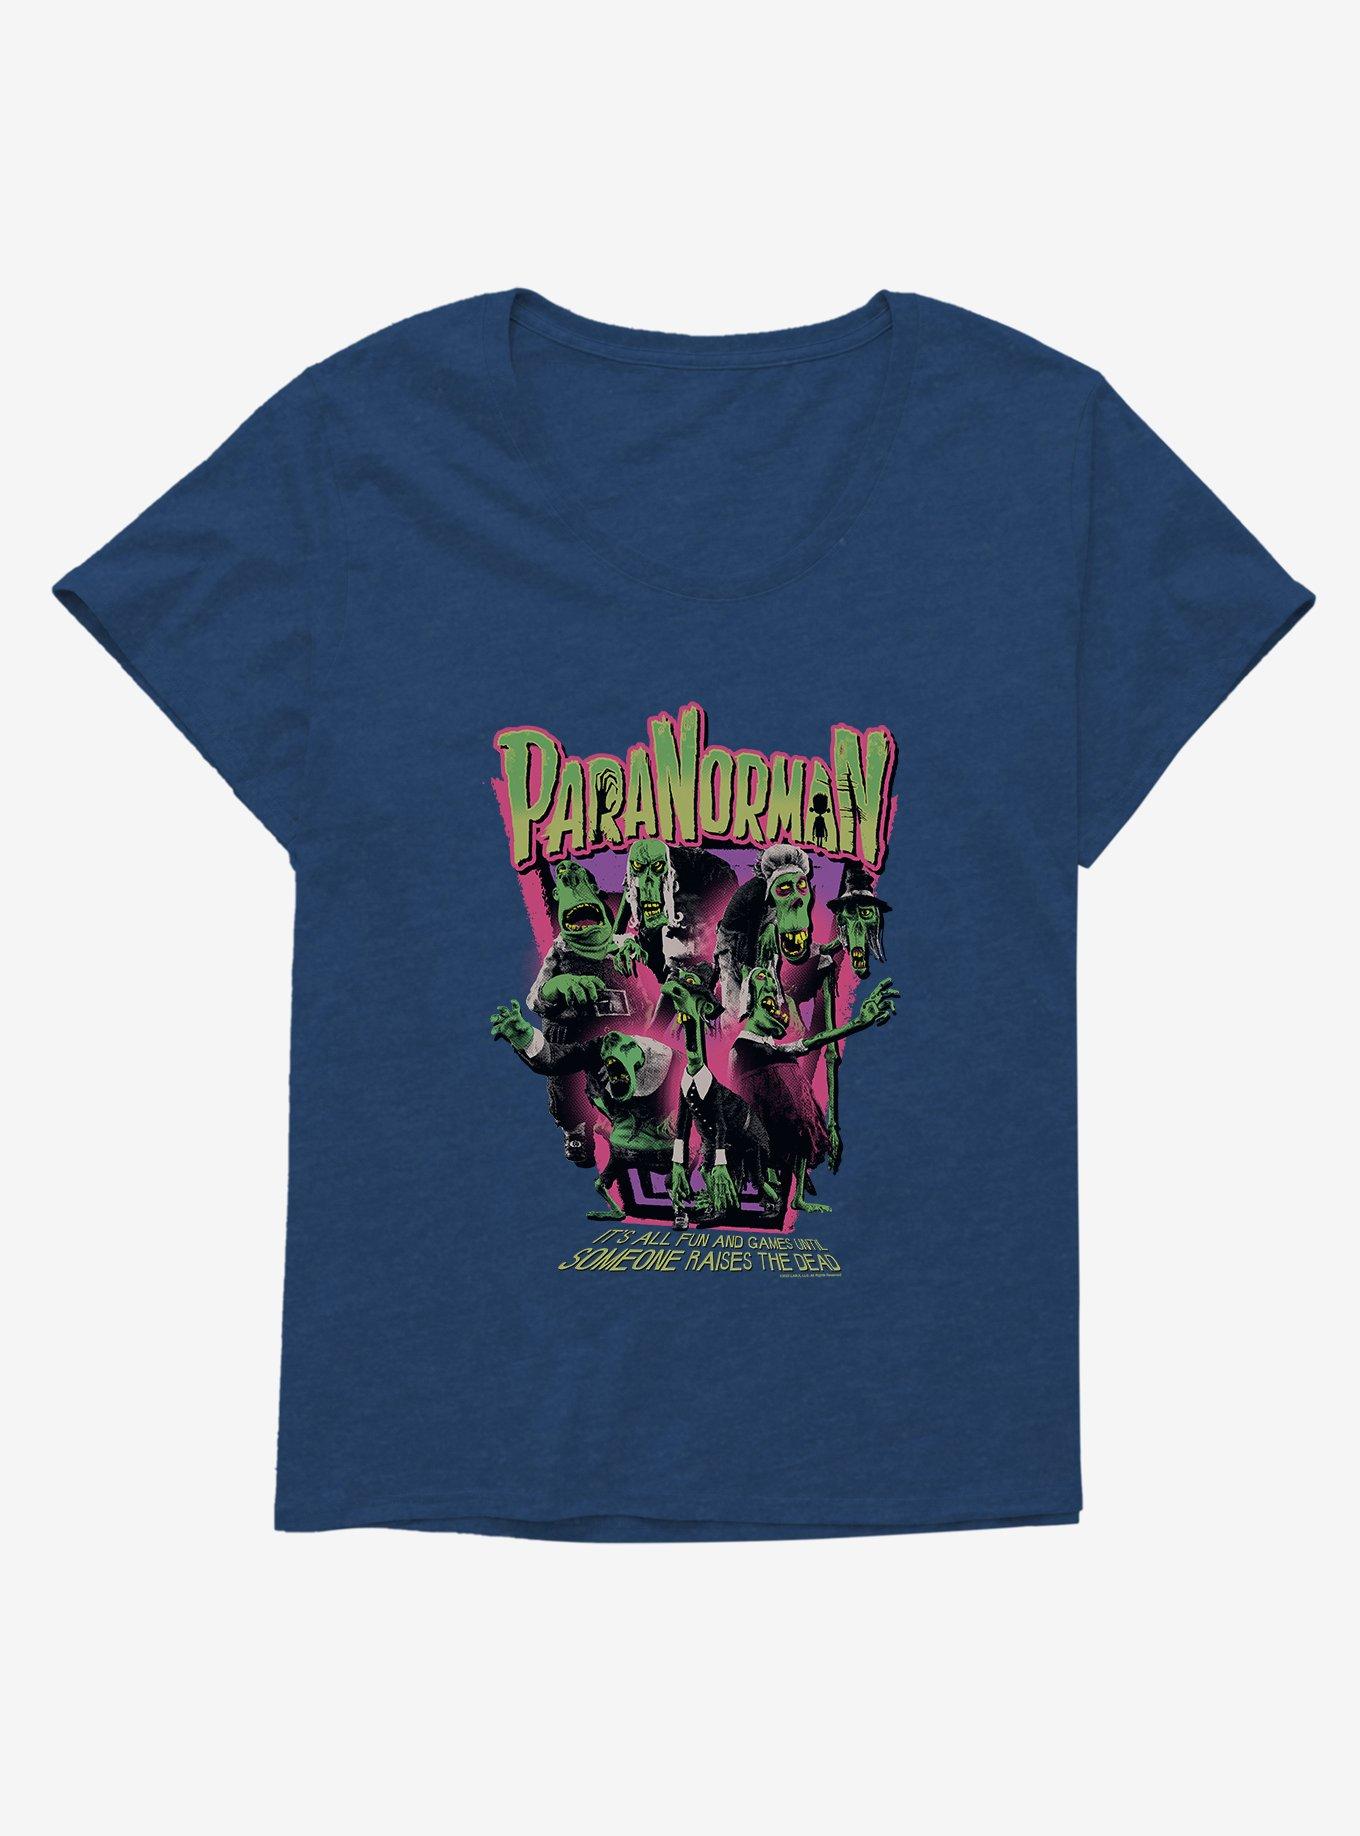 Paranorman Raises The Dead Girls T-Shirt Plus